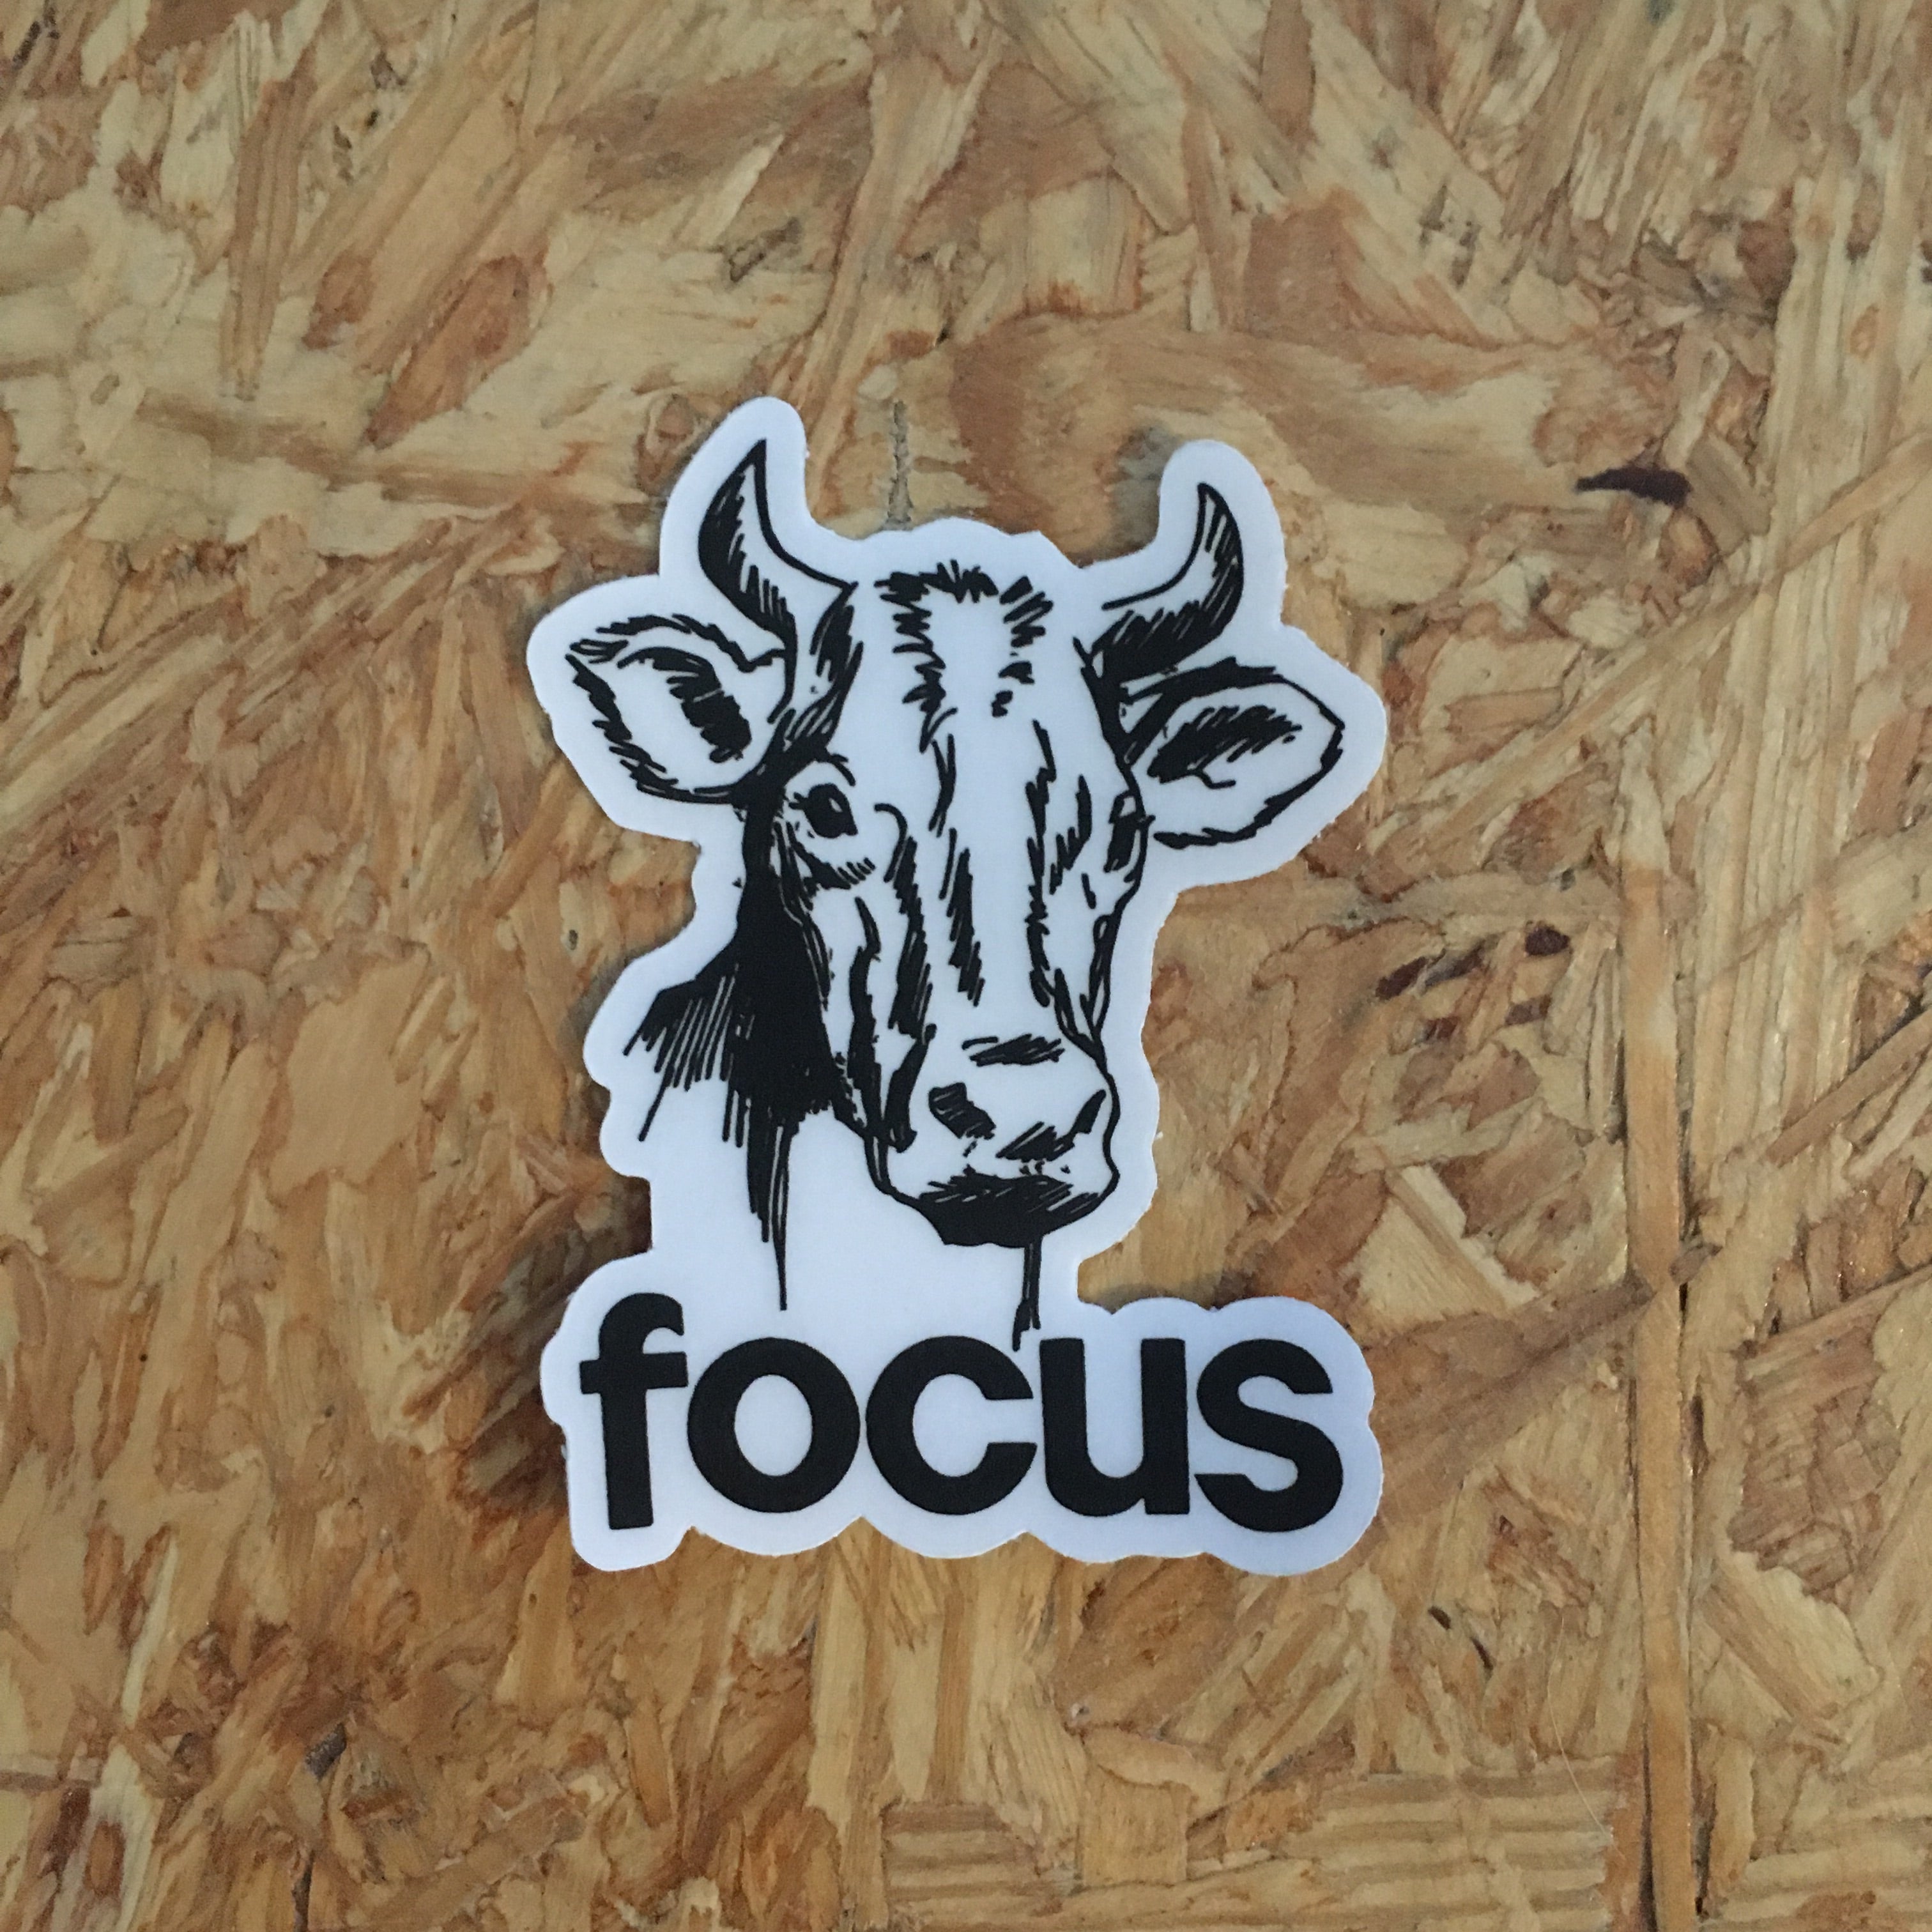 Focus Cow sticker - badkneesTs | badkneesTs